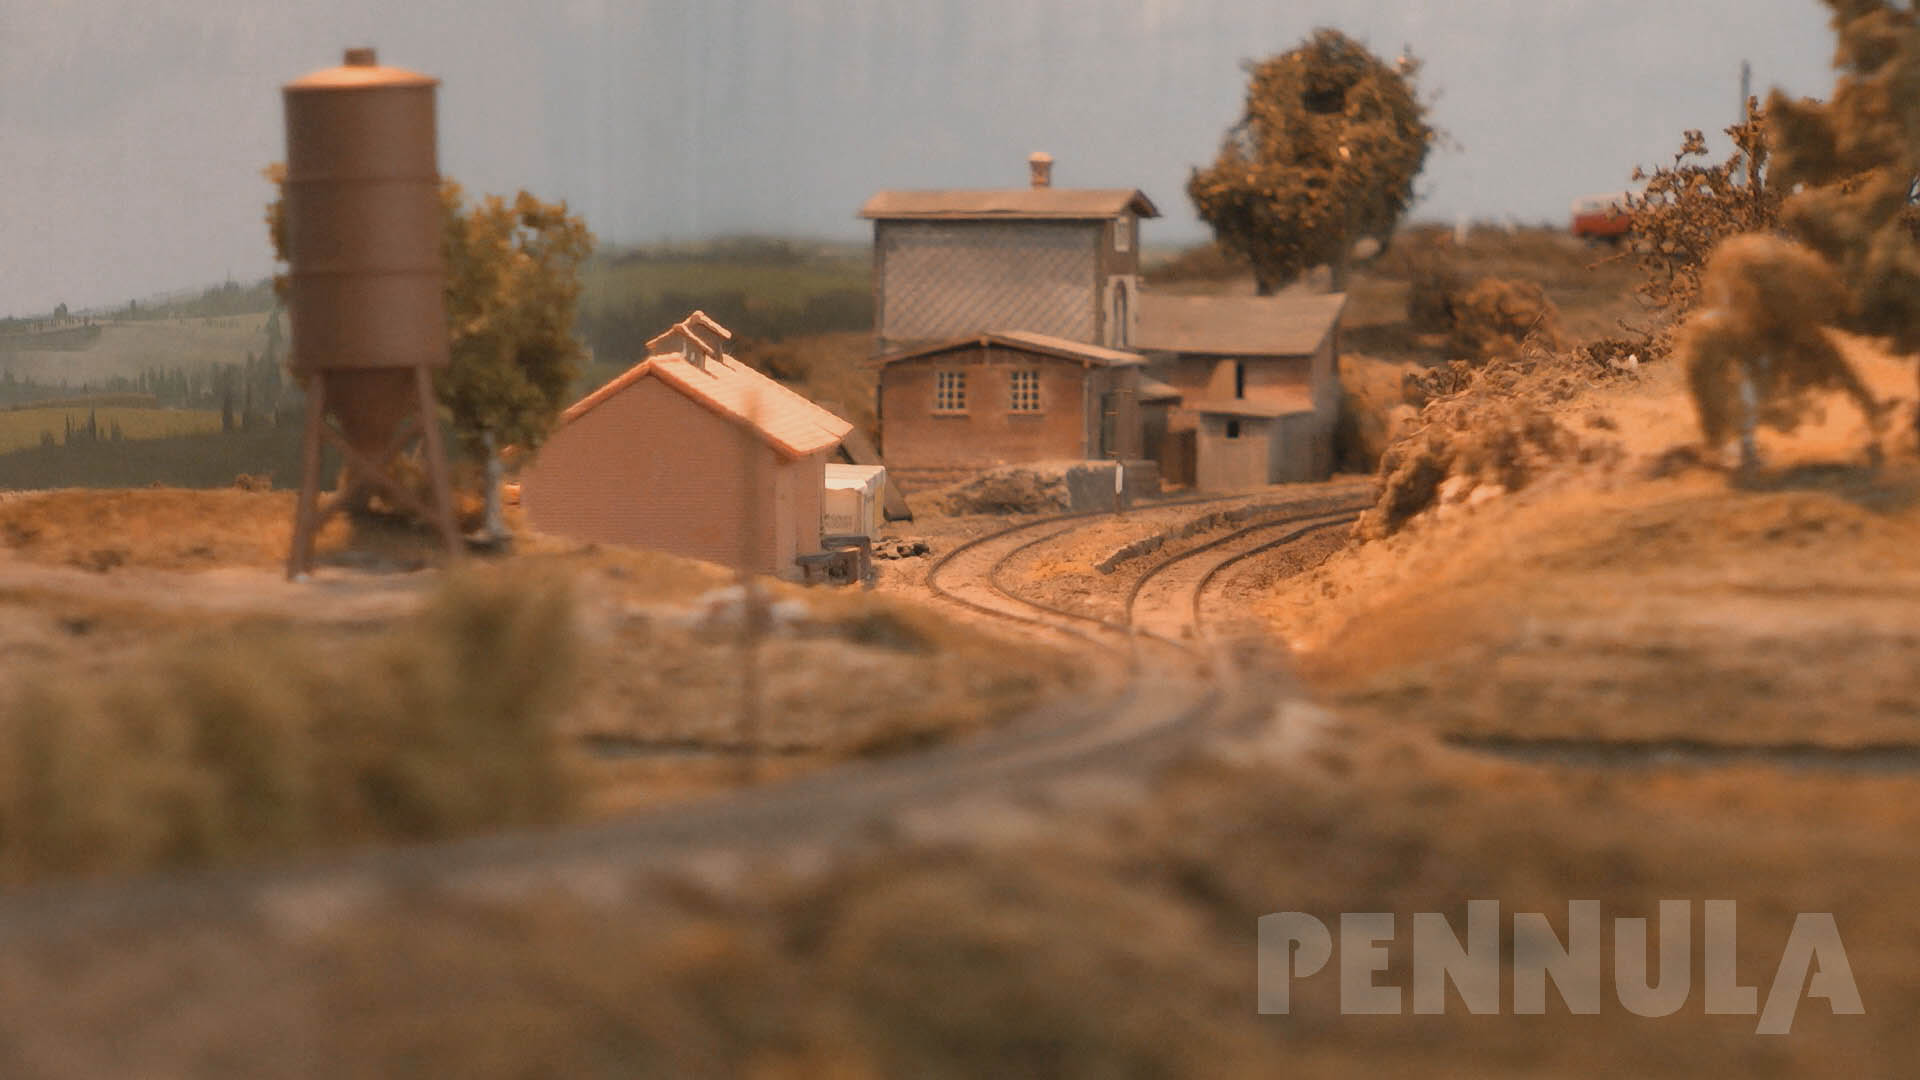 Modellbahn-Video von Pennula